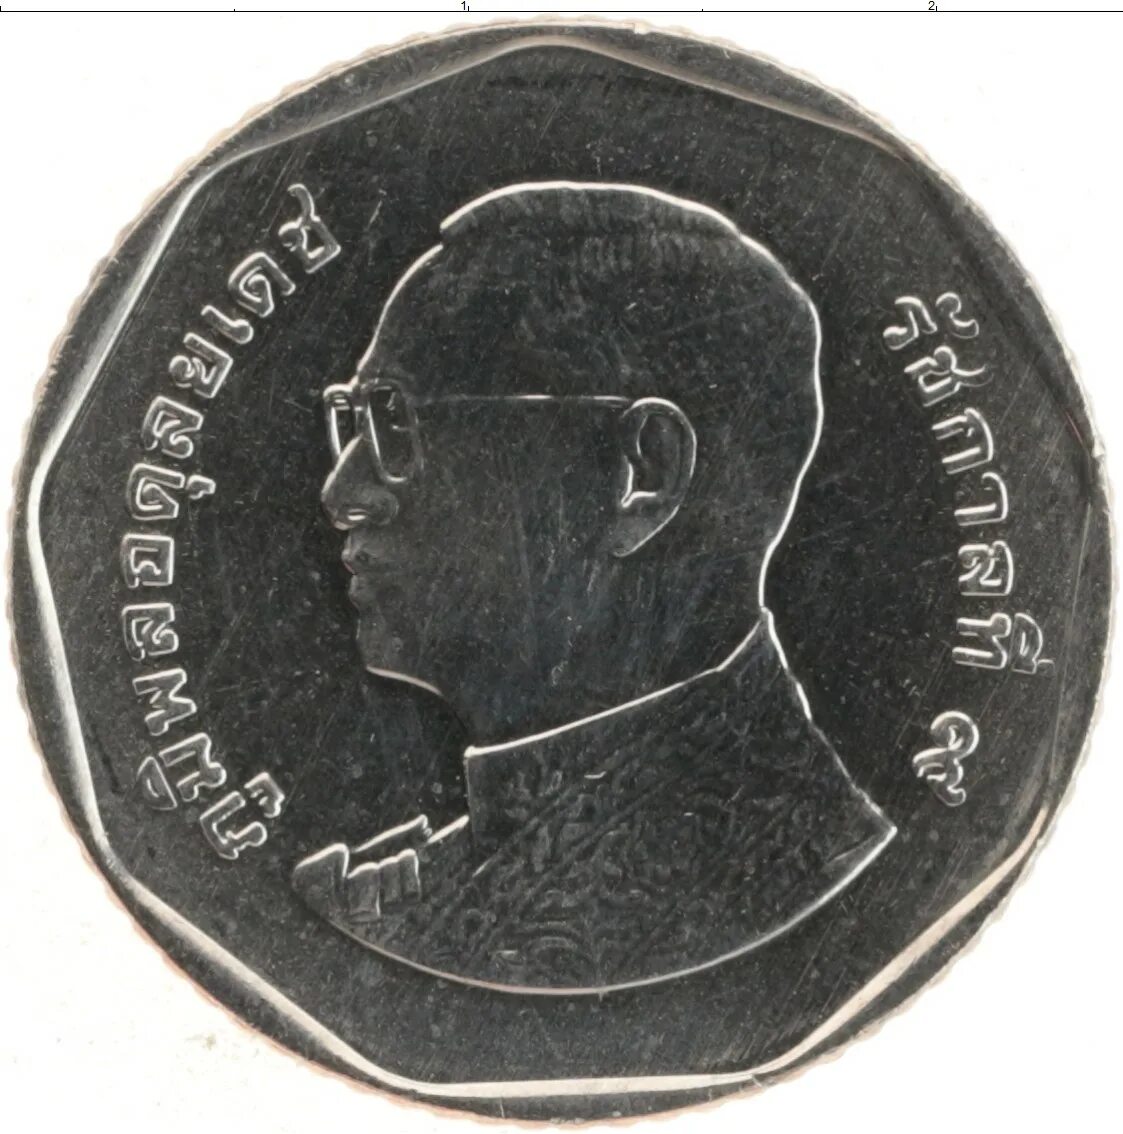 5 батов в рублях. Таиландская монета 5 бат. Тайские монеты 5 бат. Тацландские монеты 5 бат. Монета 5 Батов Таиланд.